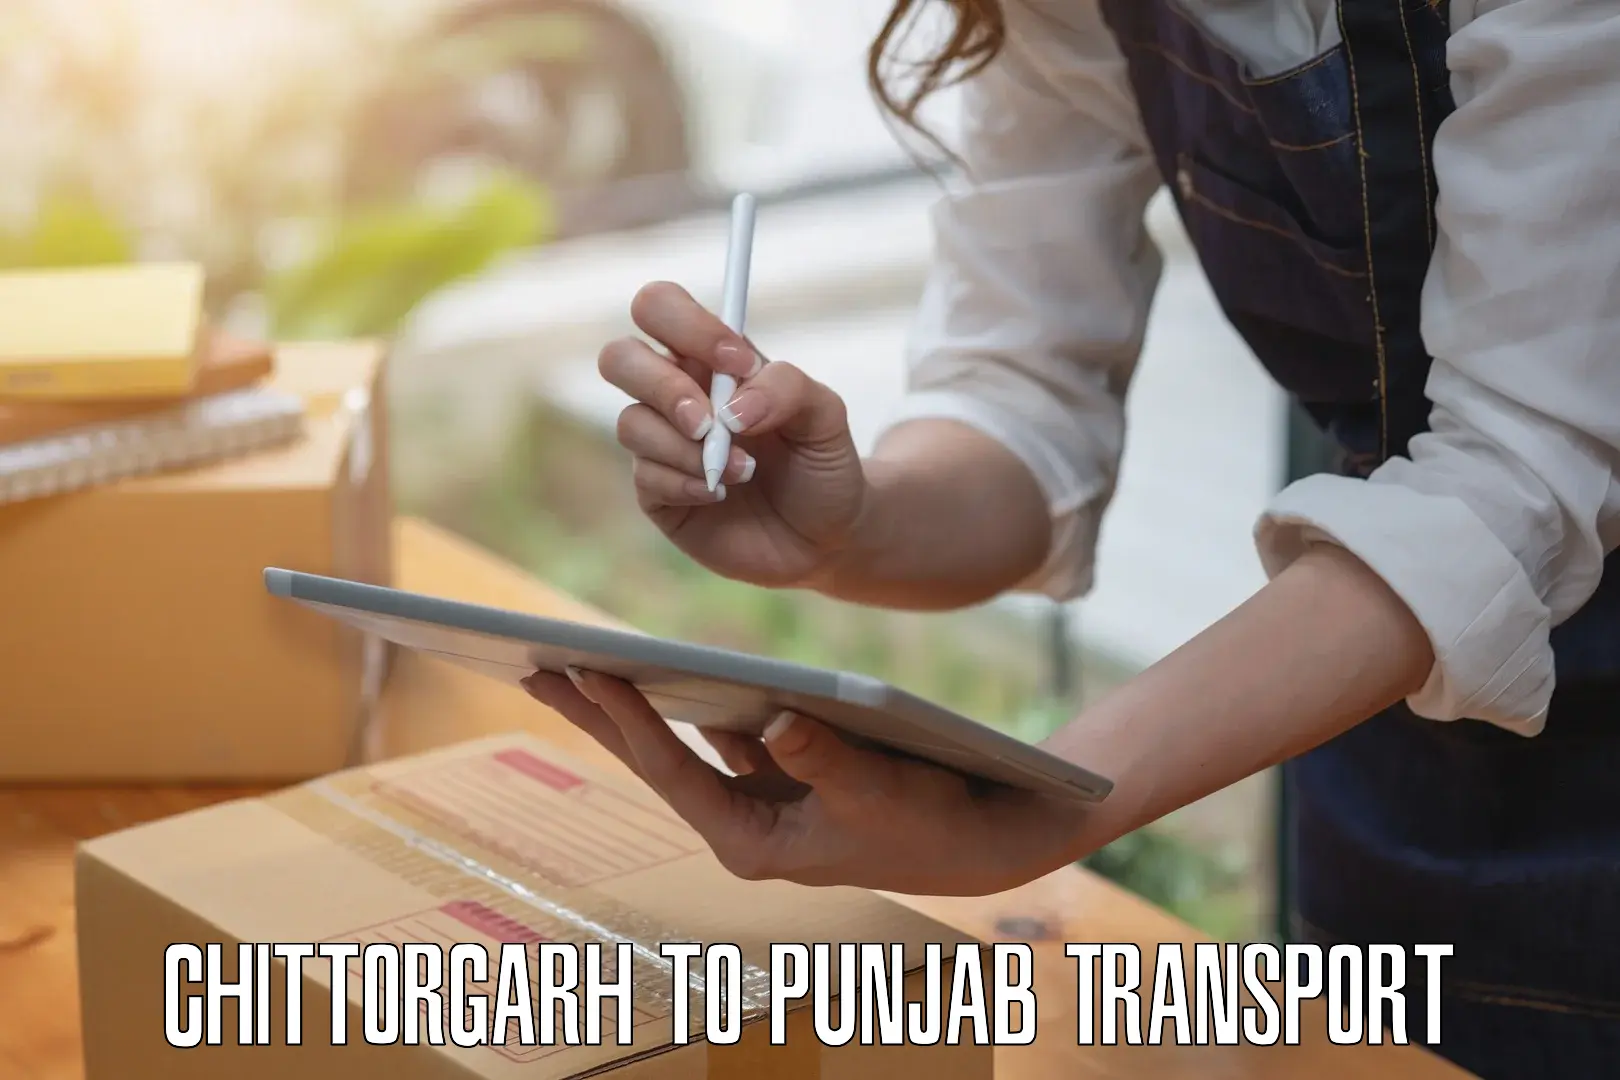 Best transport services in India Chittorgarh to Fatehgarh Sahib